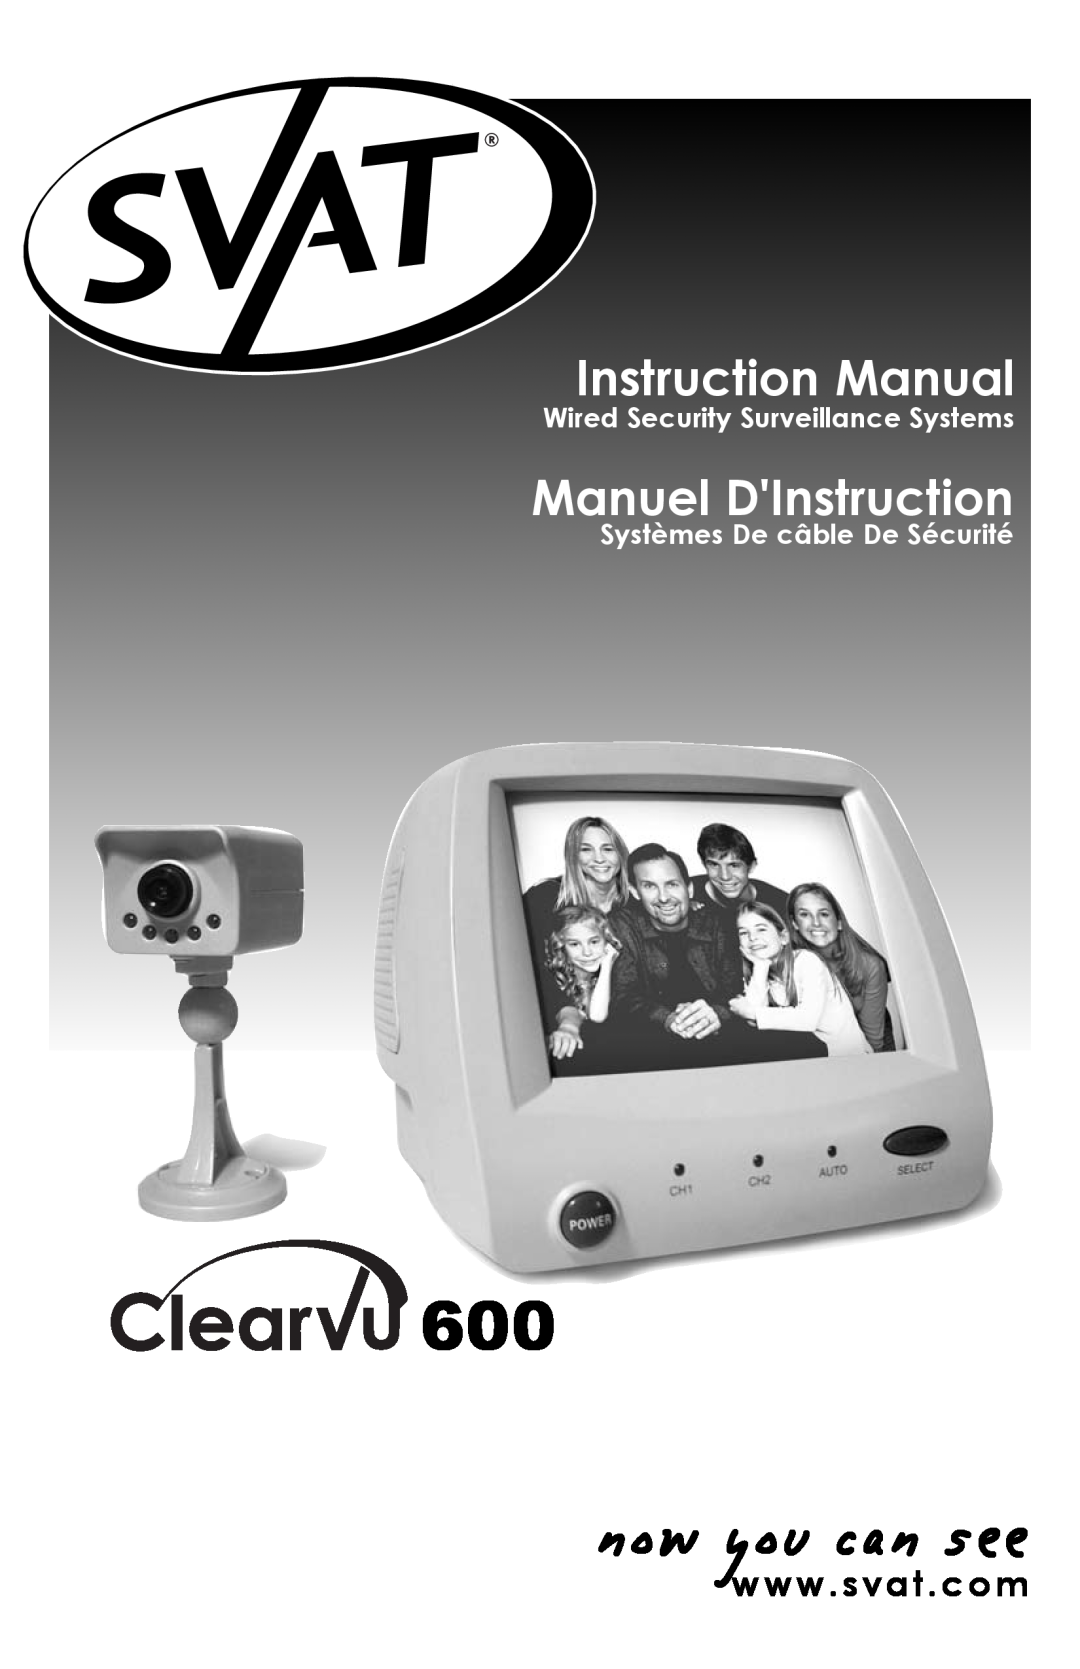 SVAT Electronics qxd600 instruction manual Wired Security Surveillance Systems, Systèmes De câble De Sécurité 